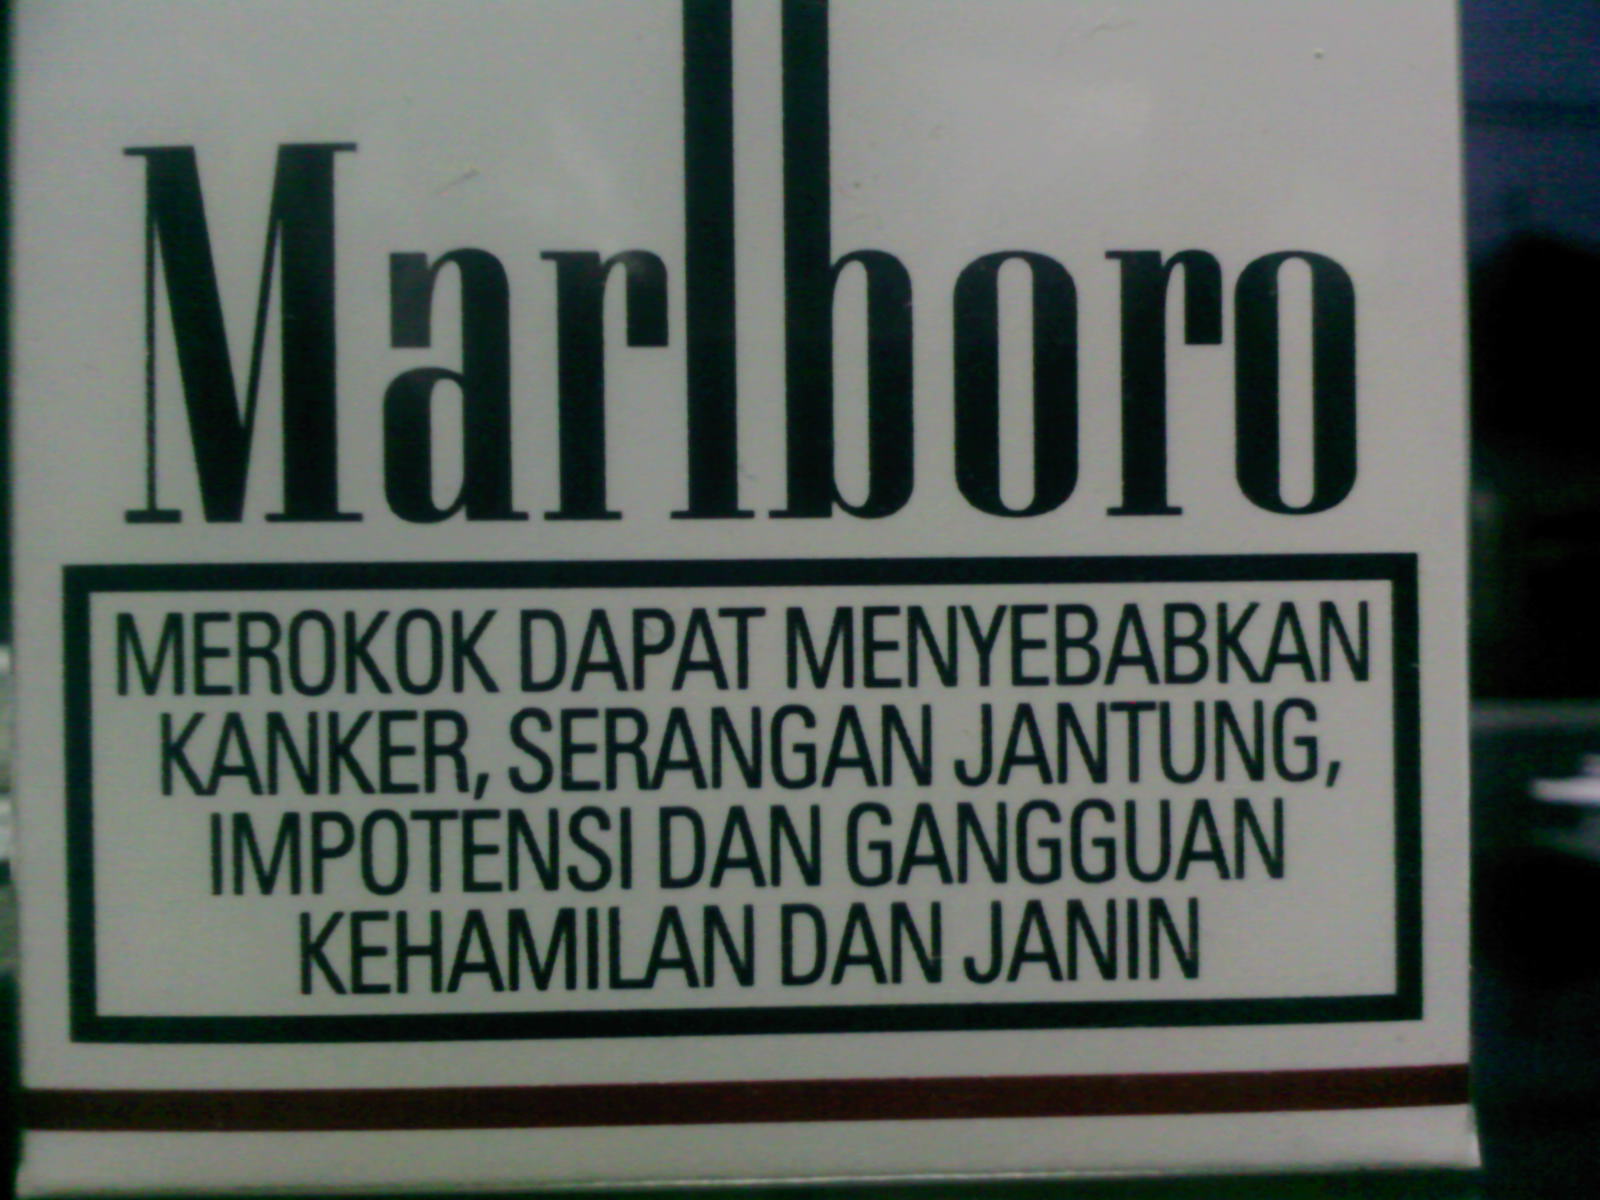 Rokok Adalah RacunLogikaMaka Merokoklah Konyol